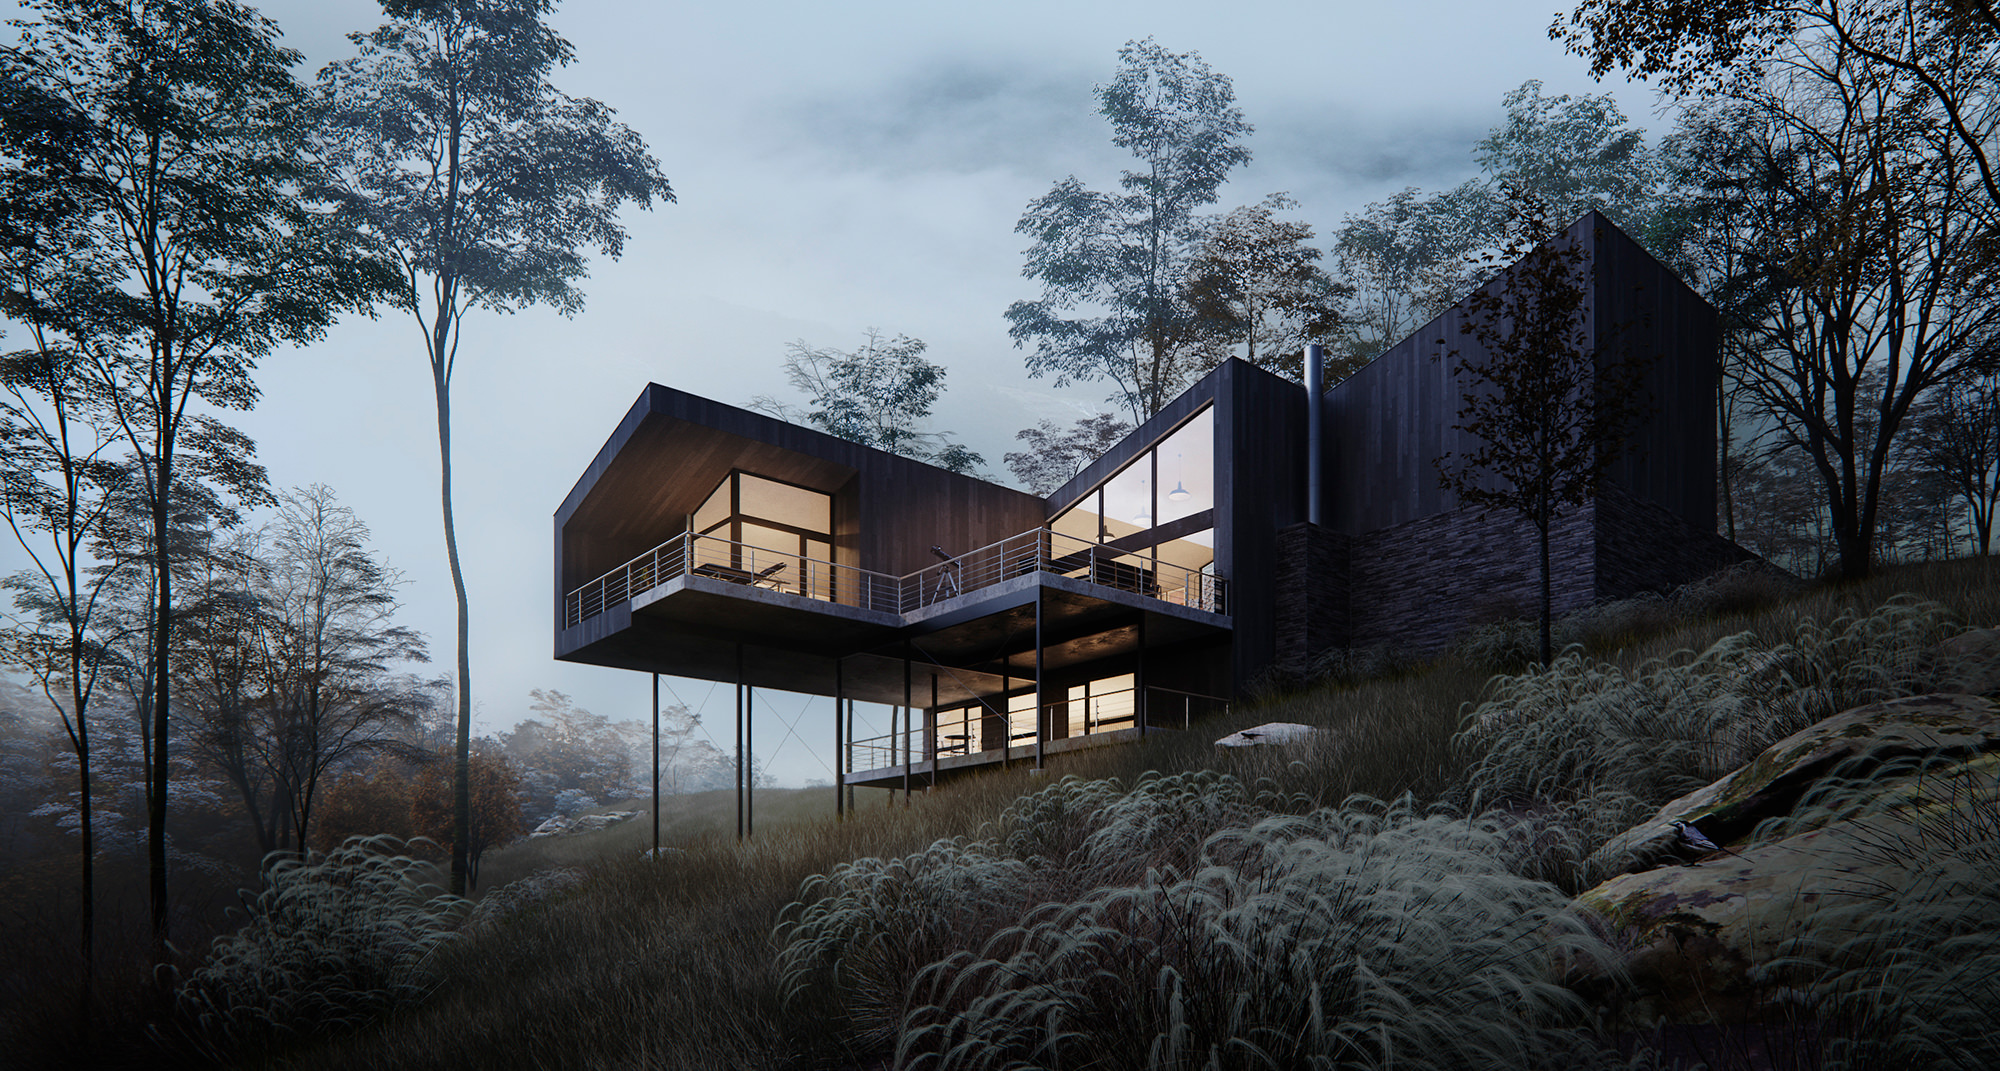 Visualisation architecturale d'un chalet à deux étages sur pilotis avec une véranda ouverte dans une forêt sauvage à la végétation riche par temps nuageux